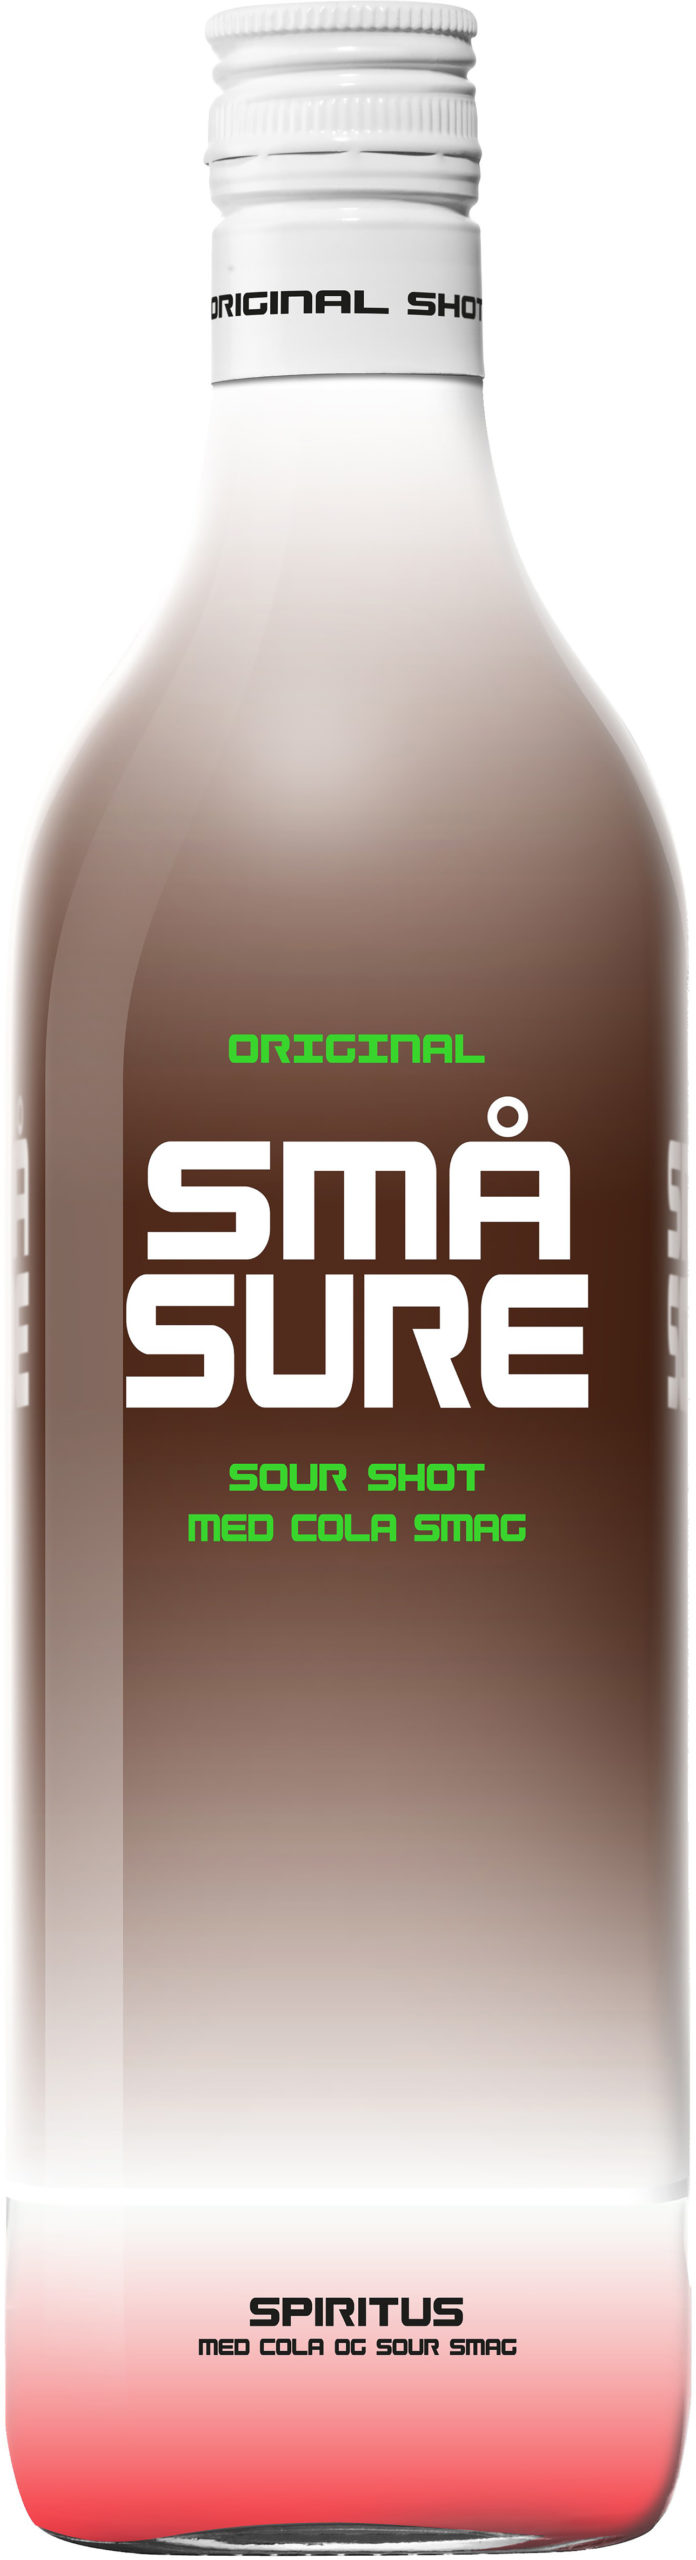 Små Sure Sour Shot Cola plastic bottle